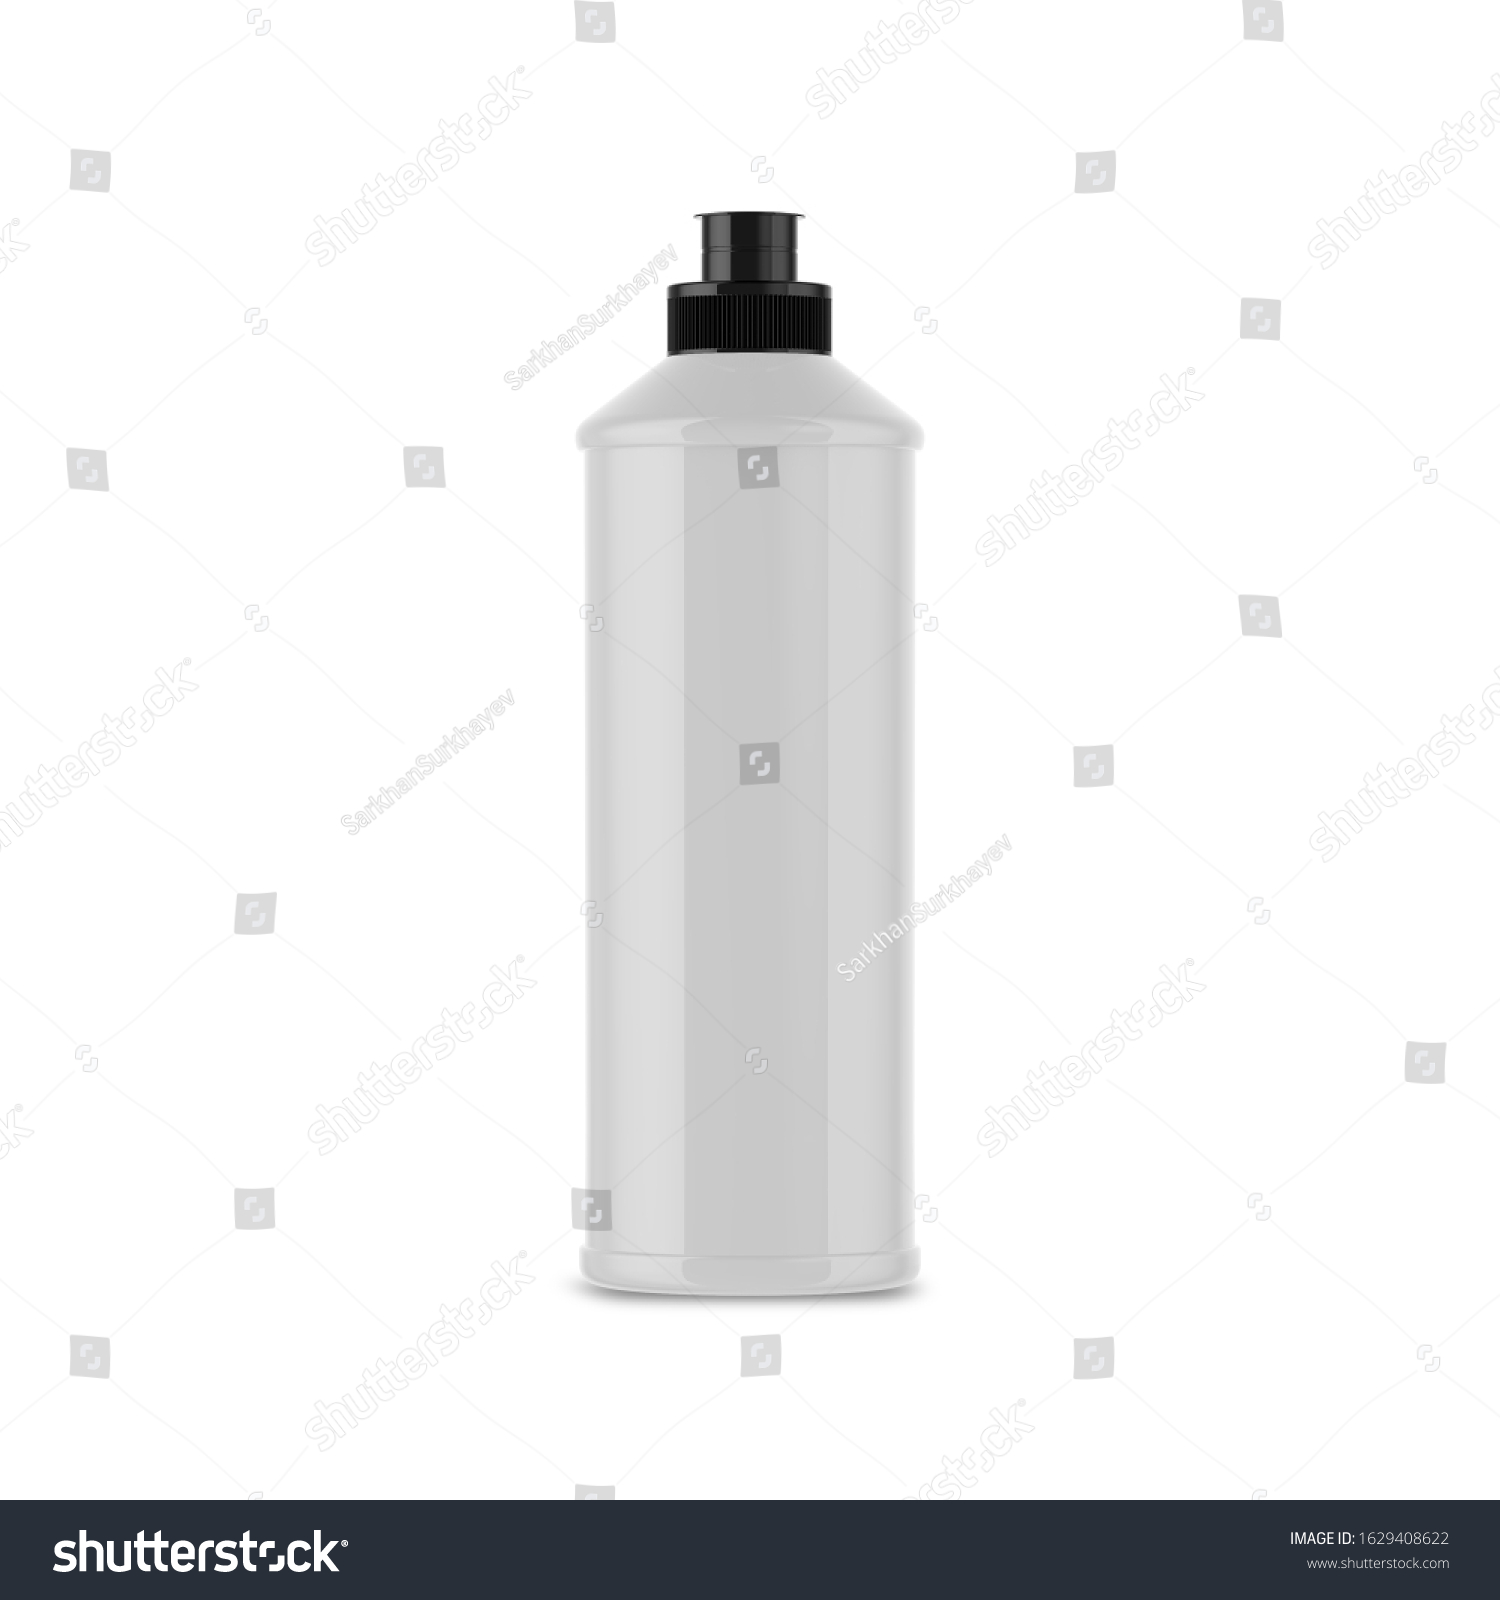 Download Glossy Detergent Bottle Mockup 3d Modeling Stock Illustration 1629408622